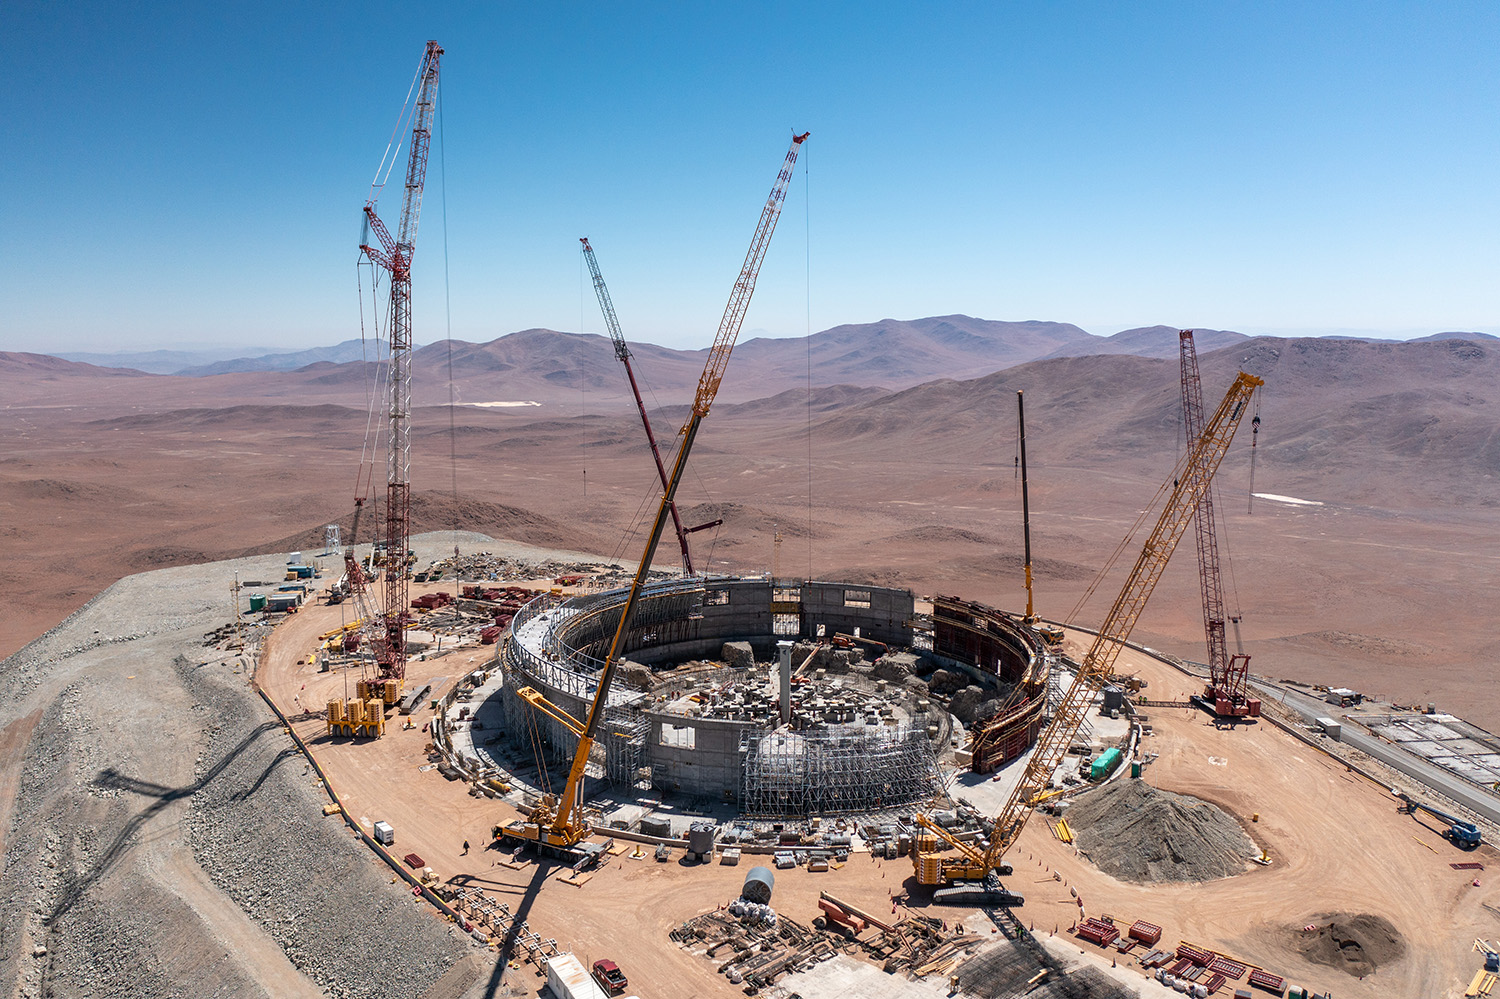 Der Bau des weltgrössten Teleskops, des Extremely Large Telescope (ELT) der ESO auf dem Gipfel des Cerro Armazones in der chilenischen Atacama-Wüste macht Fortschritte. Bildnachweis: G. Hüdepohl (atacamaphoto.com)/ESO